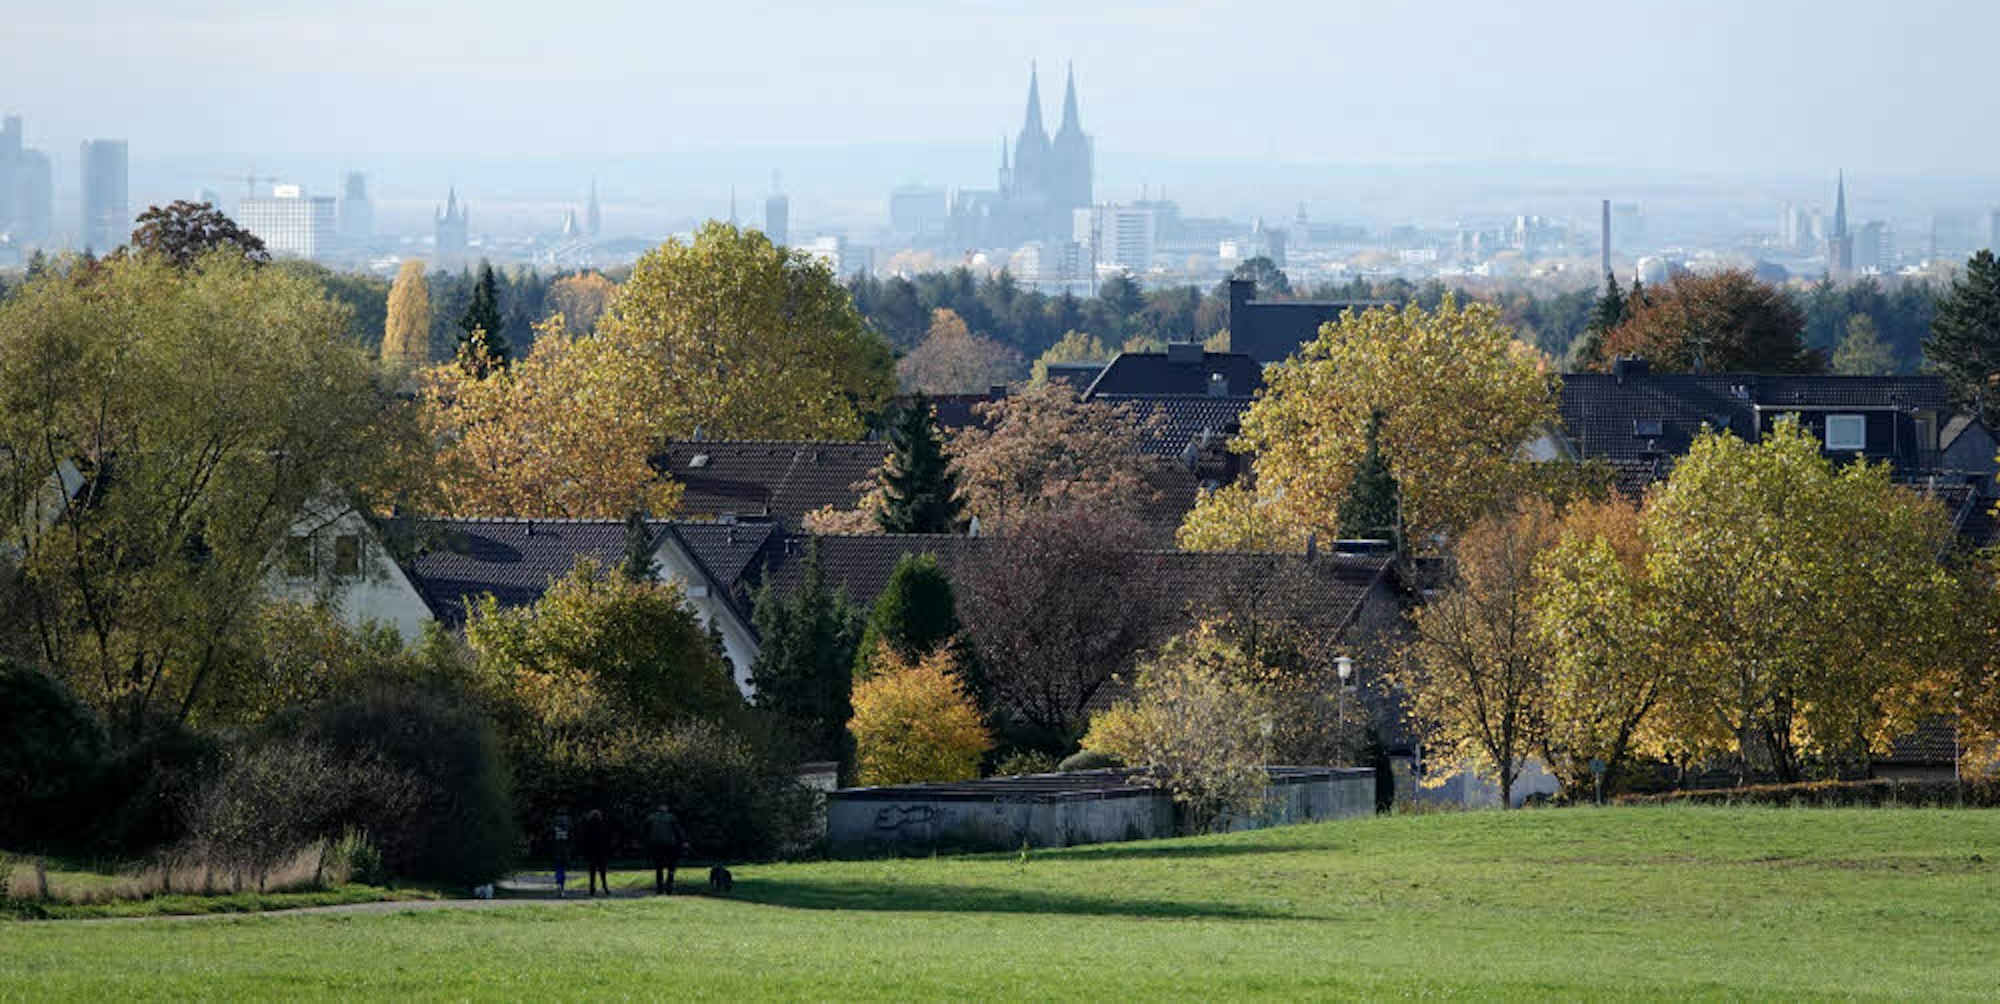 Freie Grundstücke mit fantastischen Ausblicken auf die Kölner Ebene gibt es in Gladbach noch. Welche bebaut werden sollen, ist umstritten.